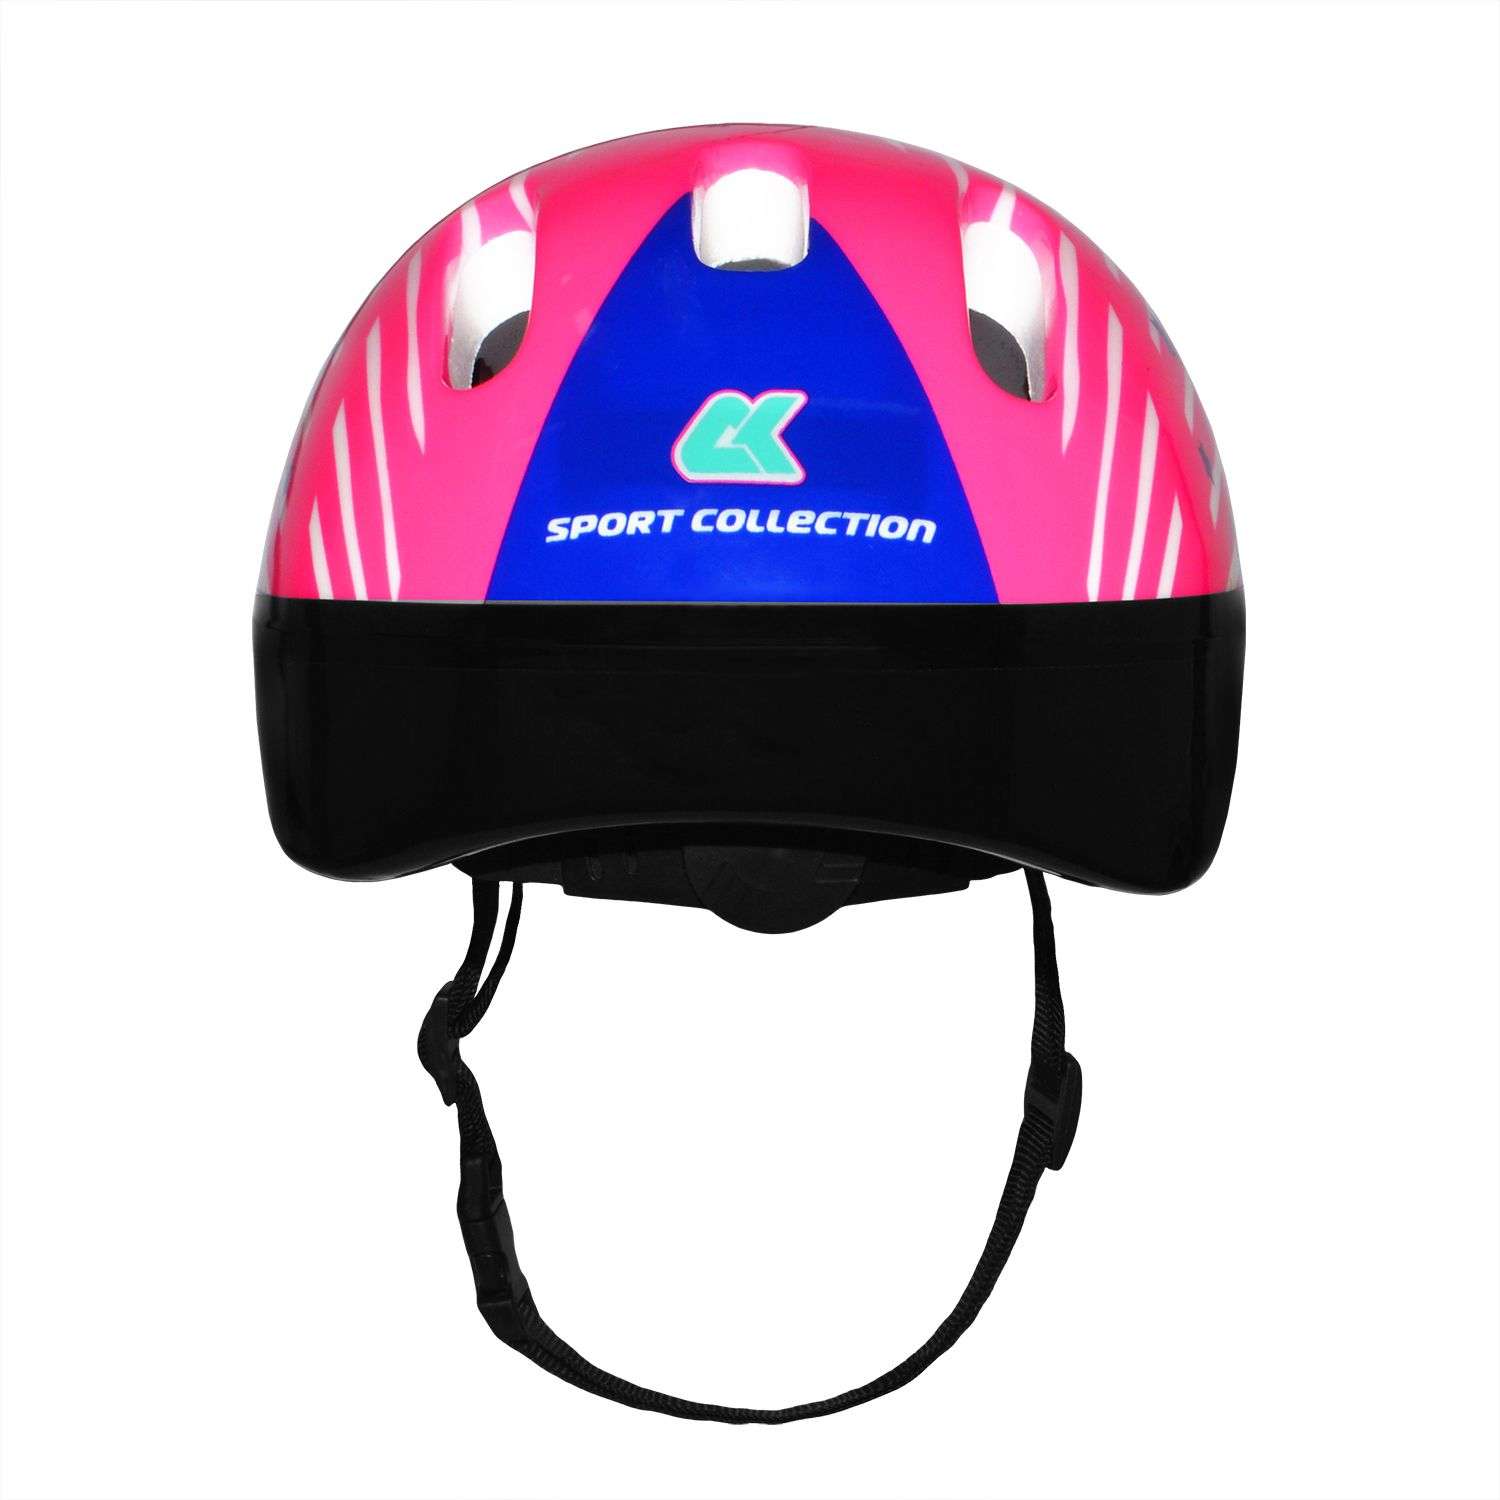 Роликовый комплект Sport Collection в сумке SET JOYFULL Pink ролики р. 29-32 Шлем 50-56 Защита S/M - фото 5